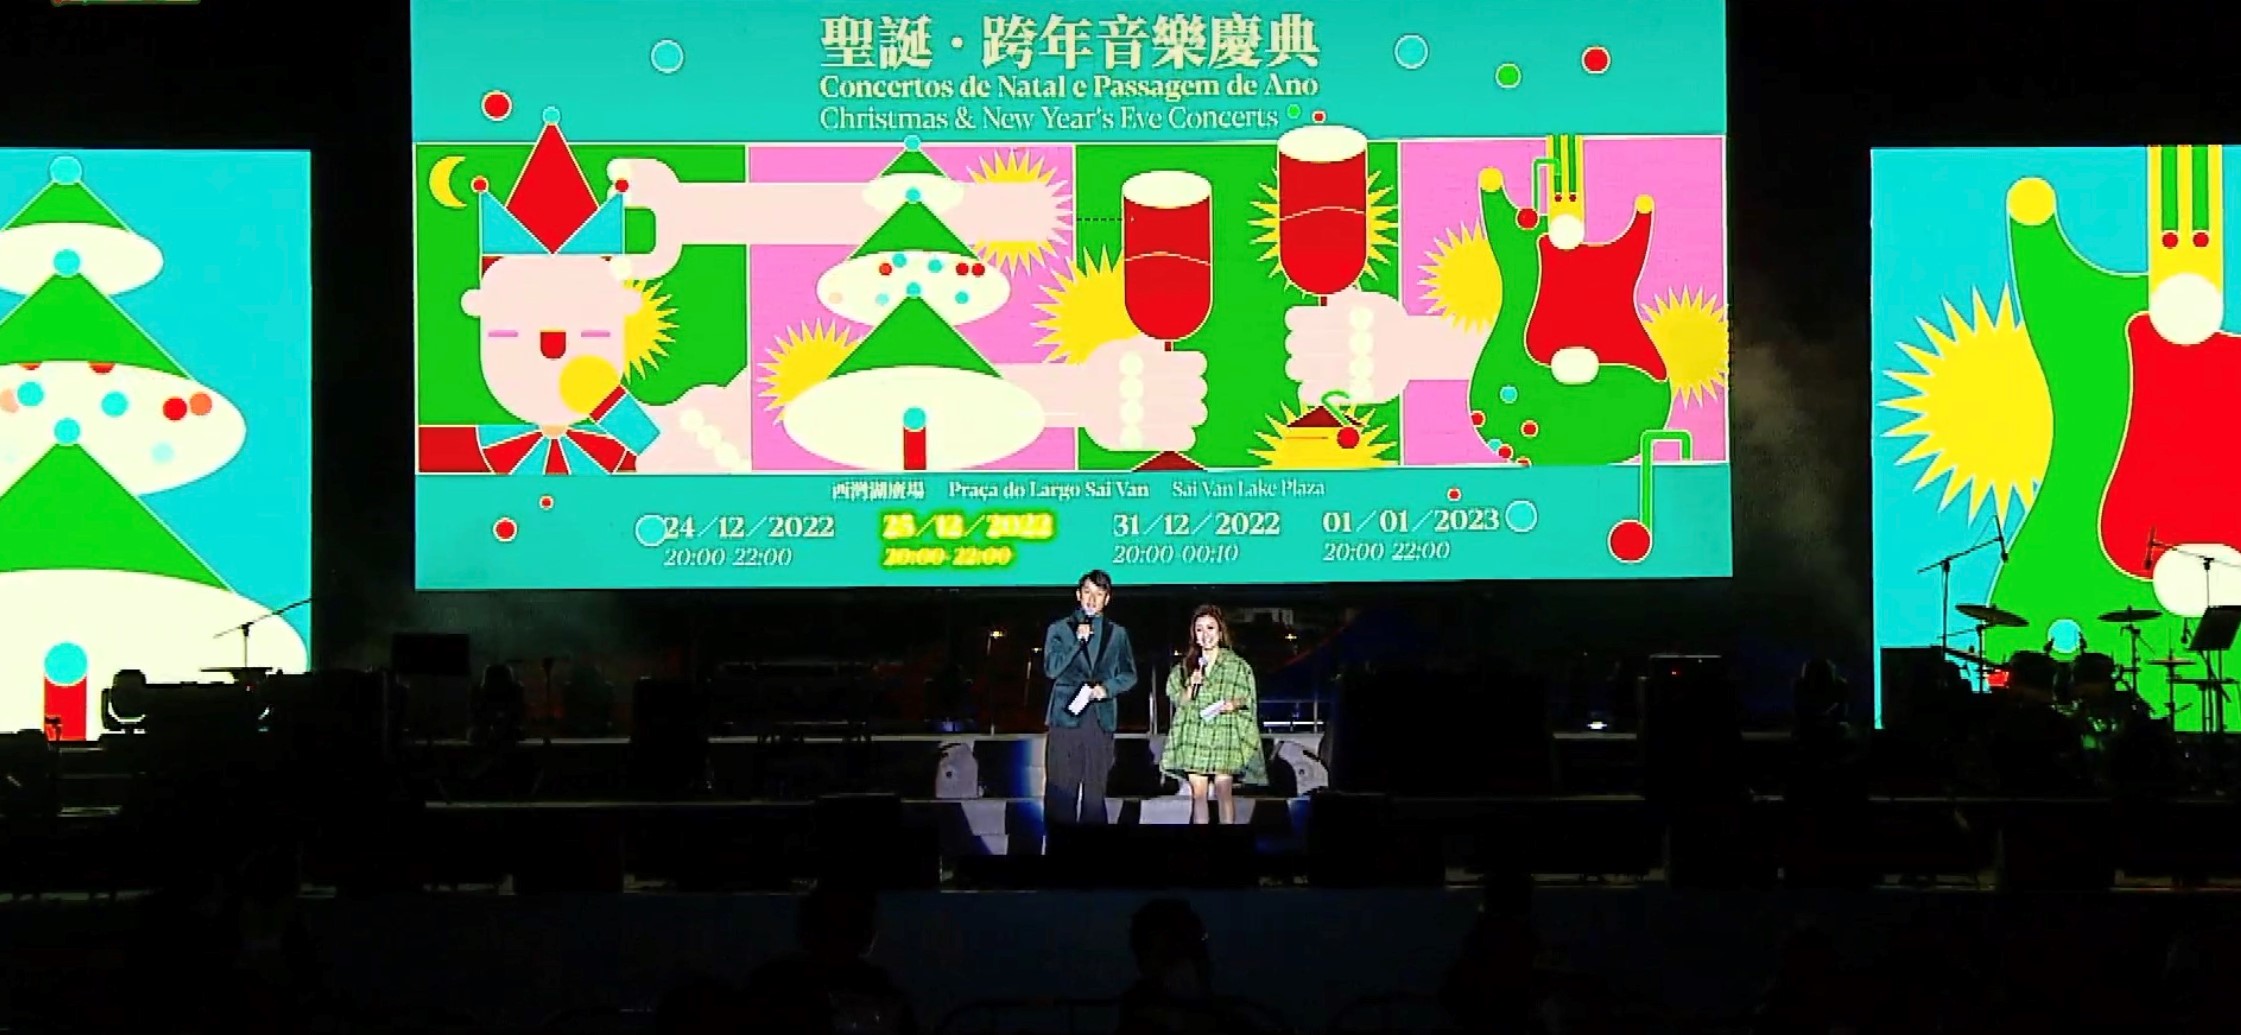 周啓陽 Elvis Chao司儀工作紀錄: 聖誕跨年音樂慶典 (廣東話、普通話)